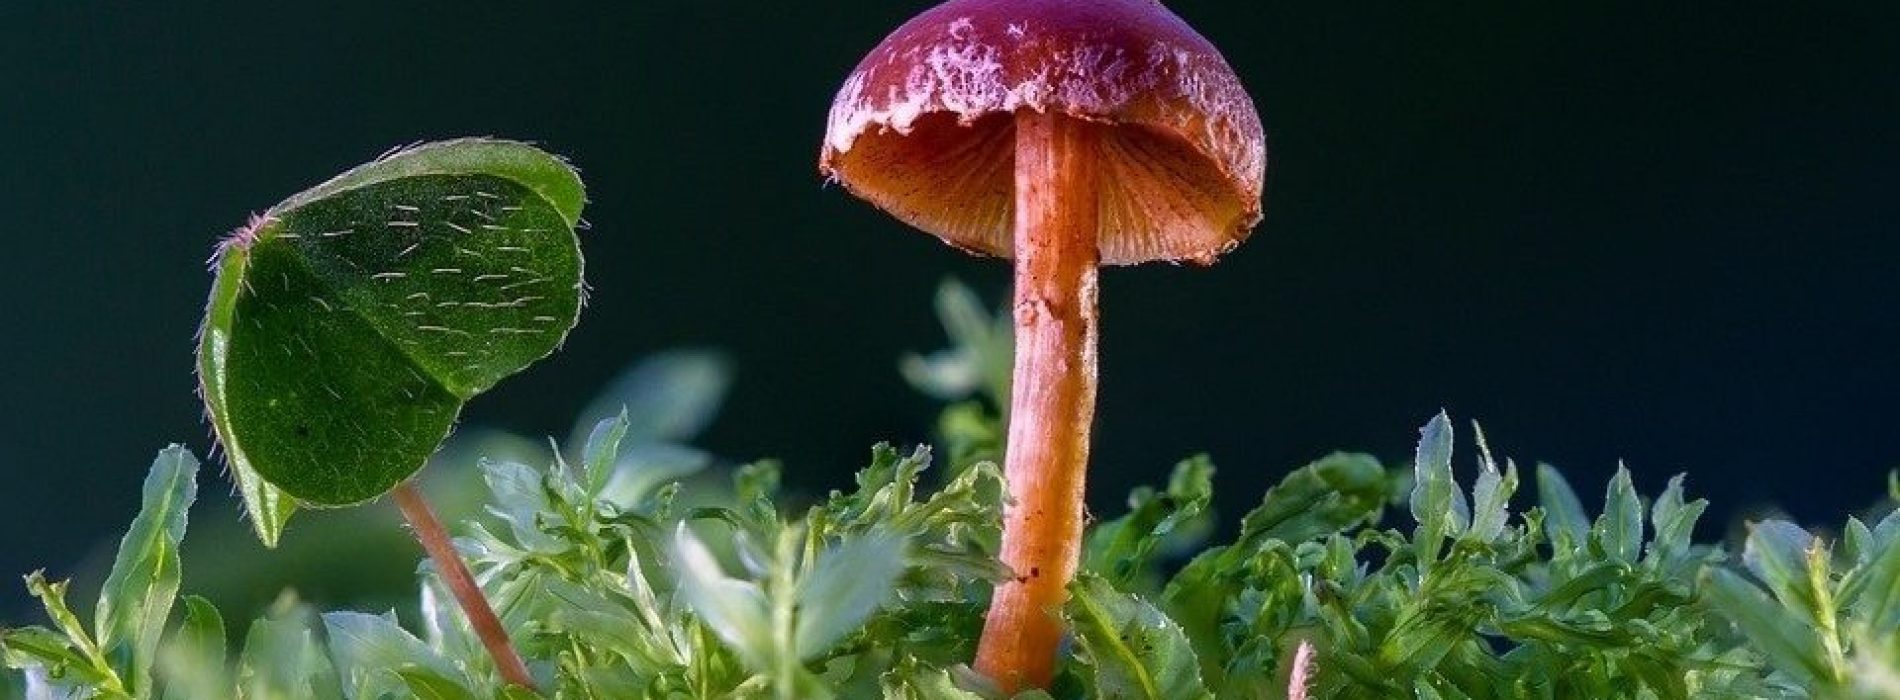 Wetenschappers hebben een paddenstoel ontdekt die plastic eet!